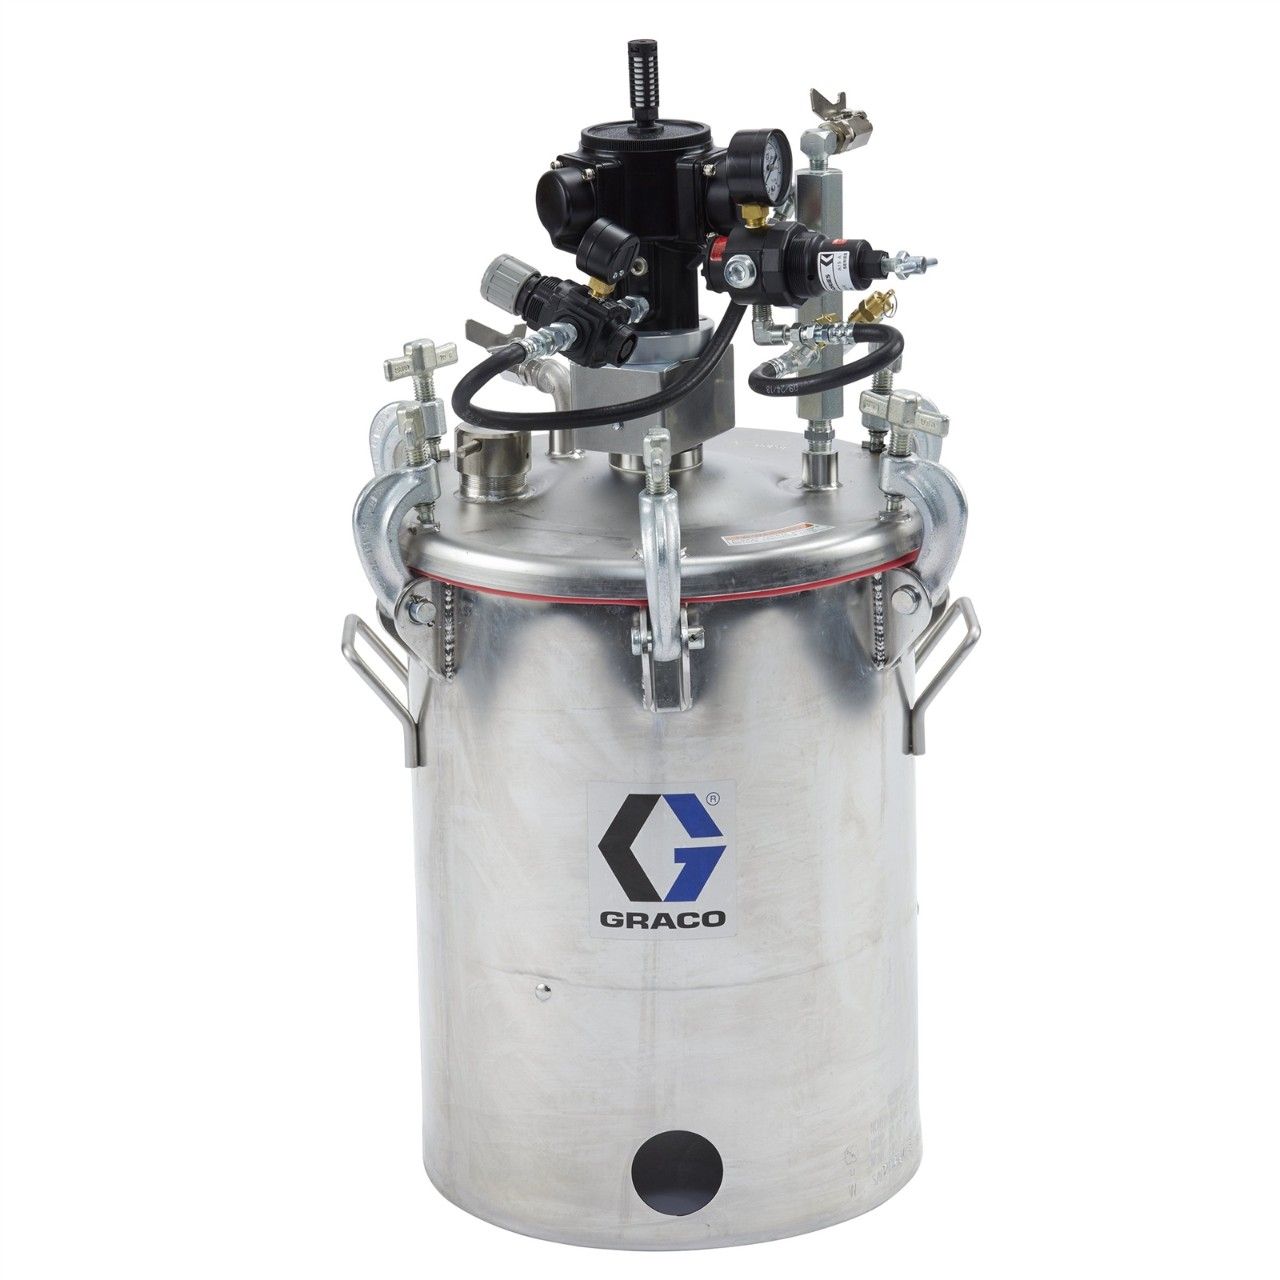 GRACO Rührwerk mit Druckbehälter, 58 Liter (15 Gallonen) - 25C538